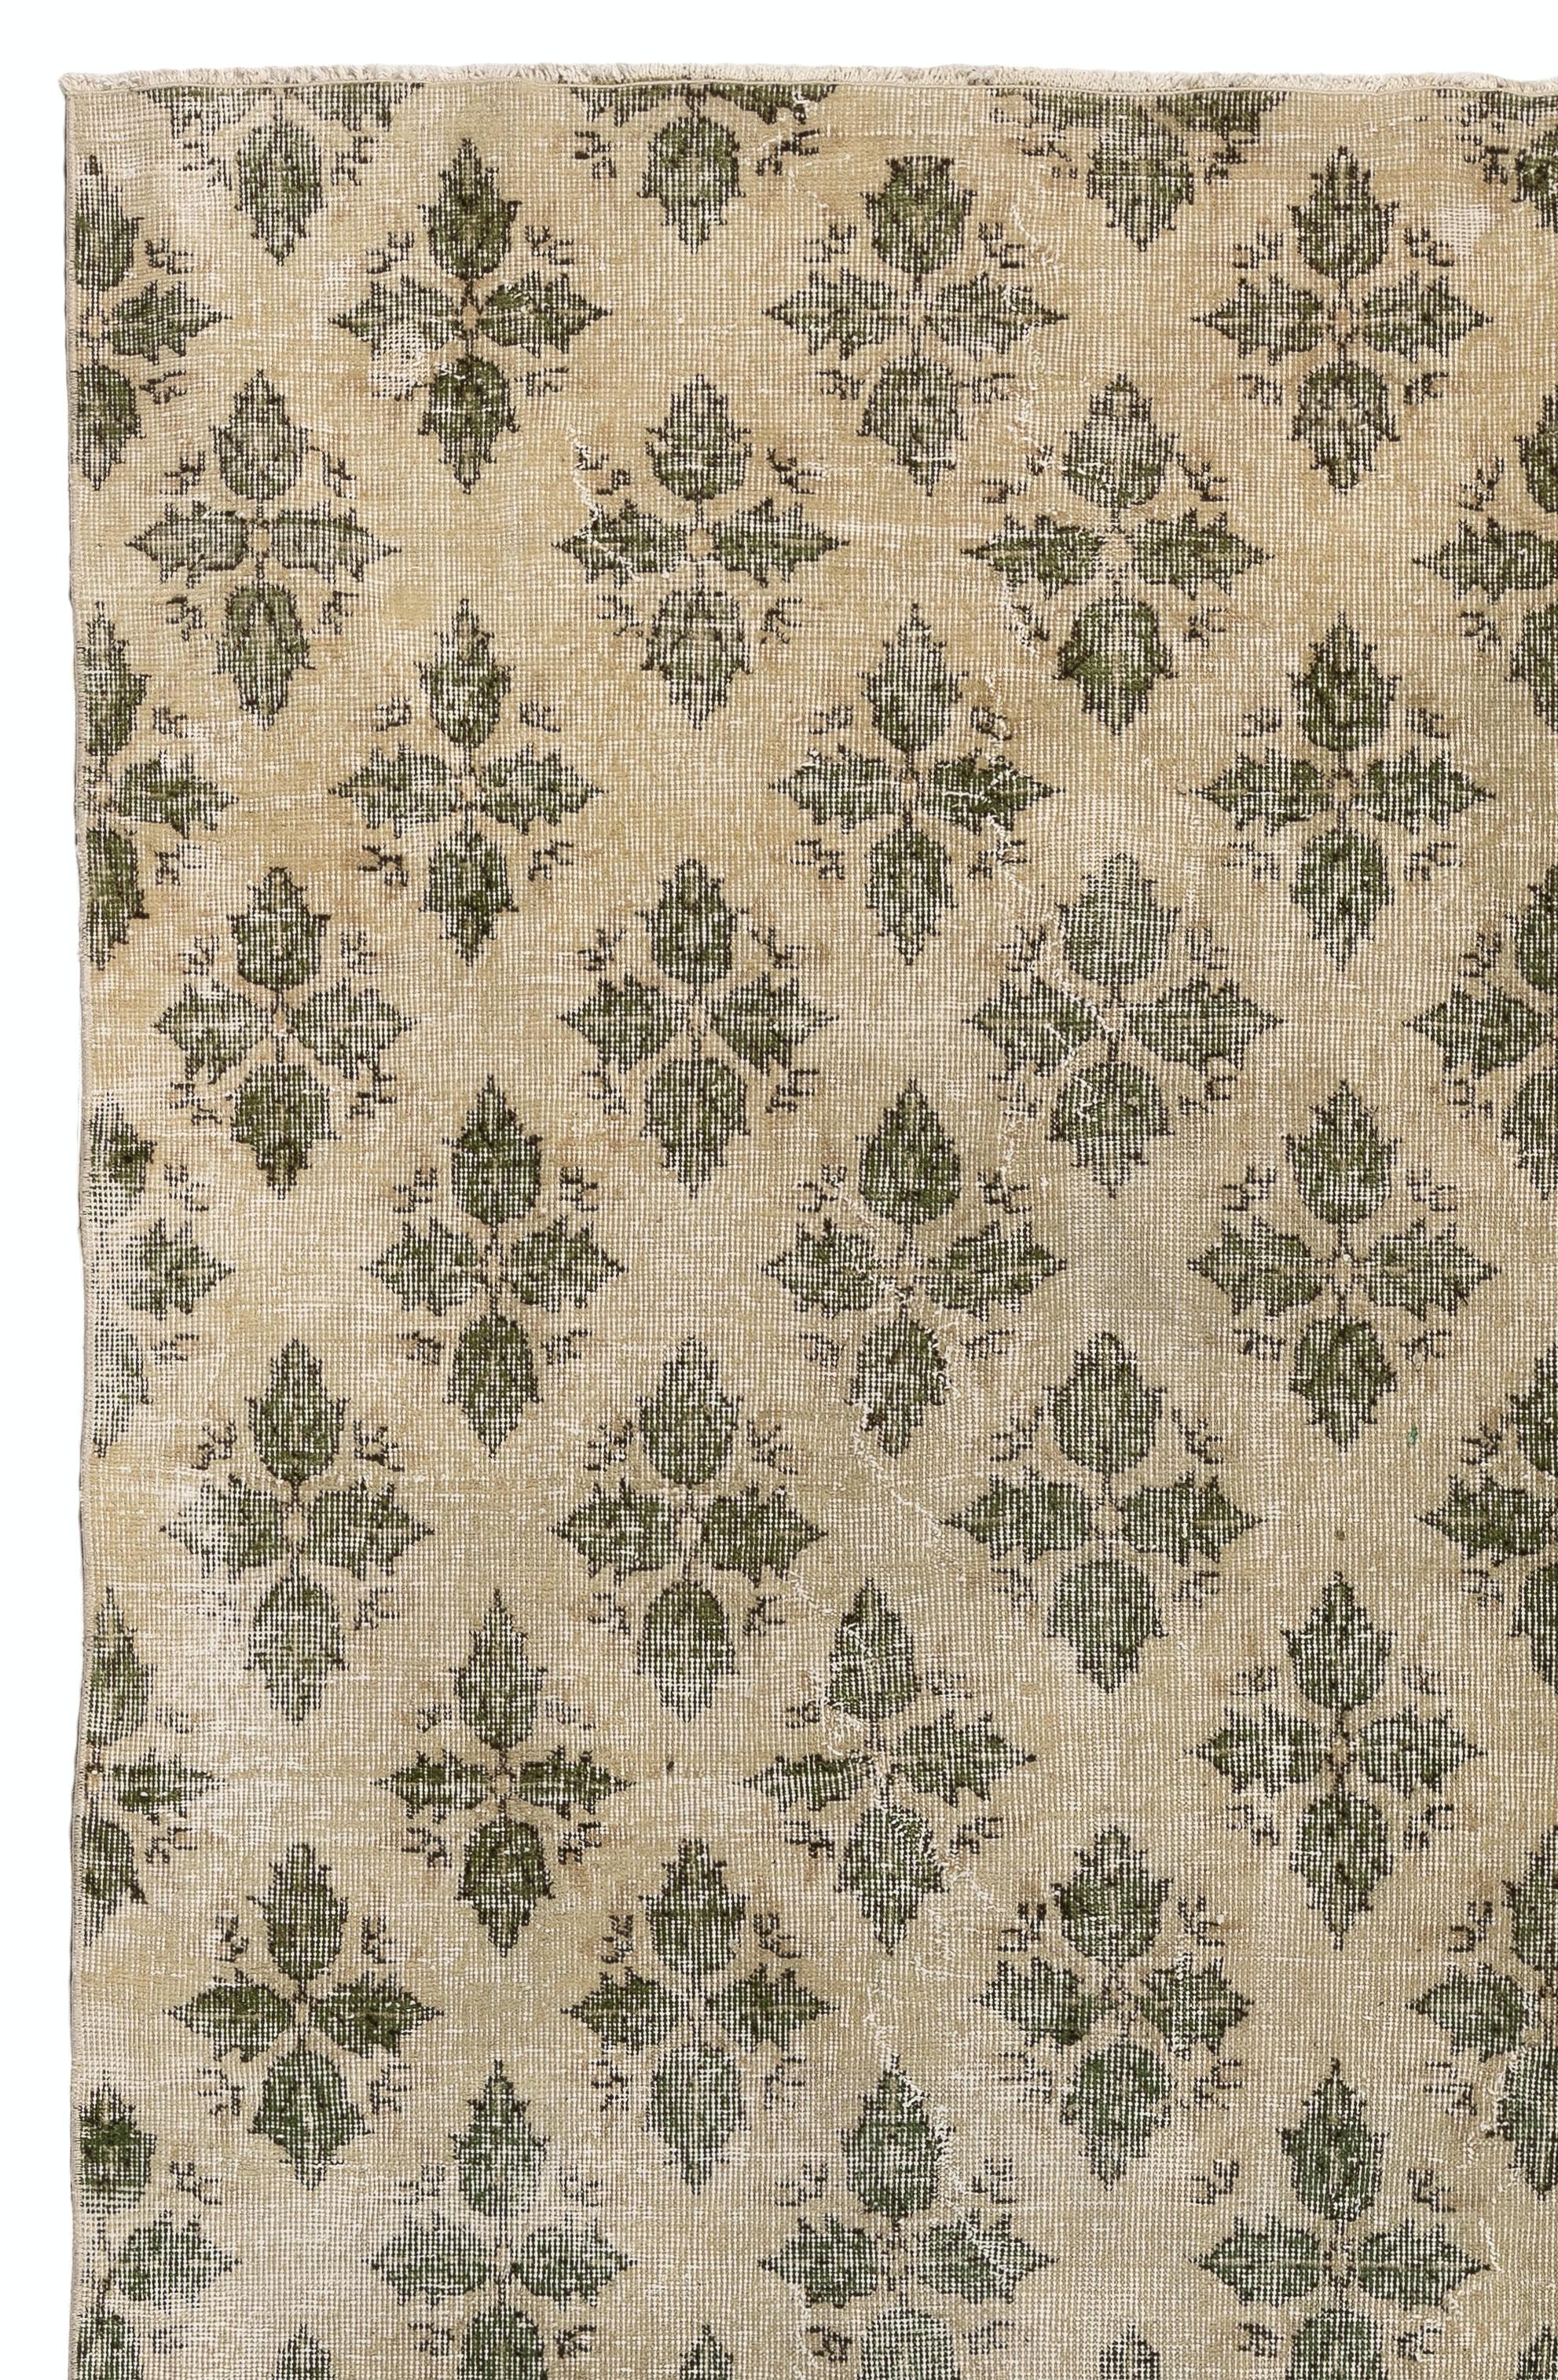 Tapis turc vintage finement noué à la main, datant des années 1950 et présentant un motif de feuilles sur toute sa surface.
Le tapis a même des poils bas en laine sur une base en coton. Il est lourd et repose à plat sur le sol, en très bon état et